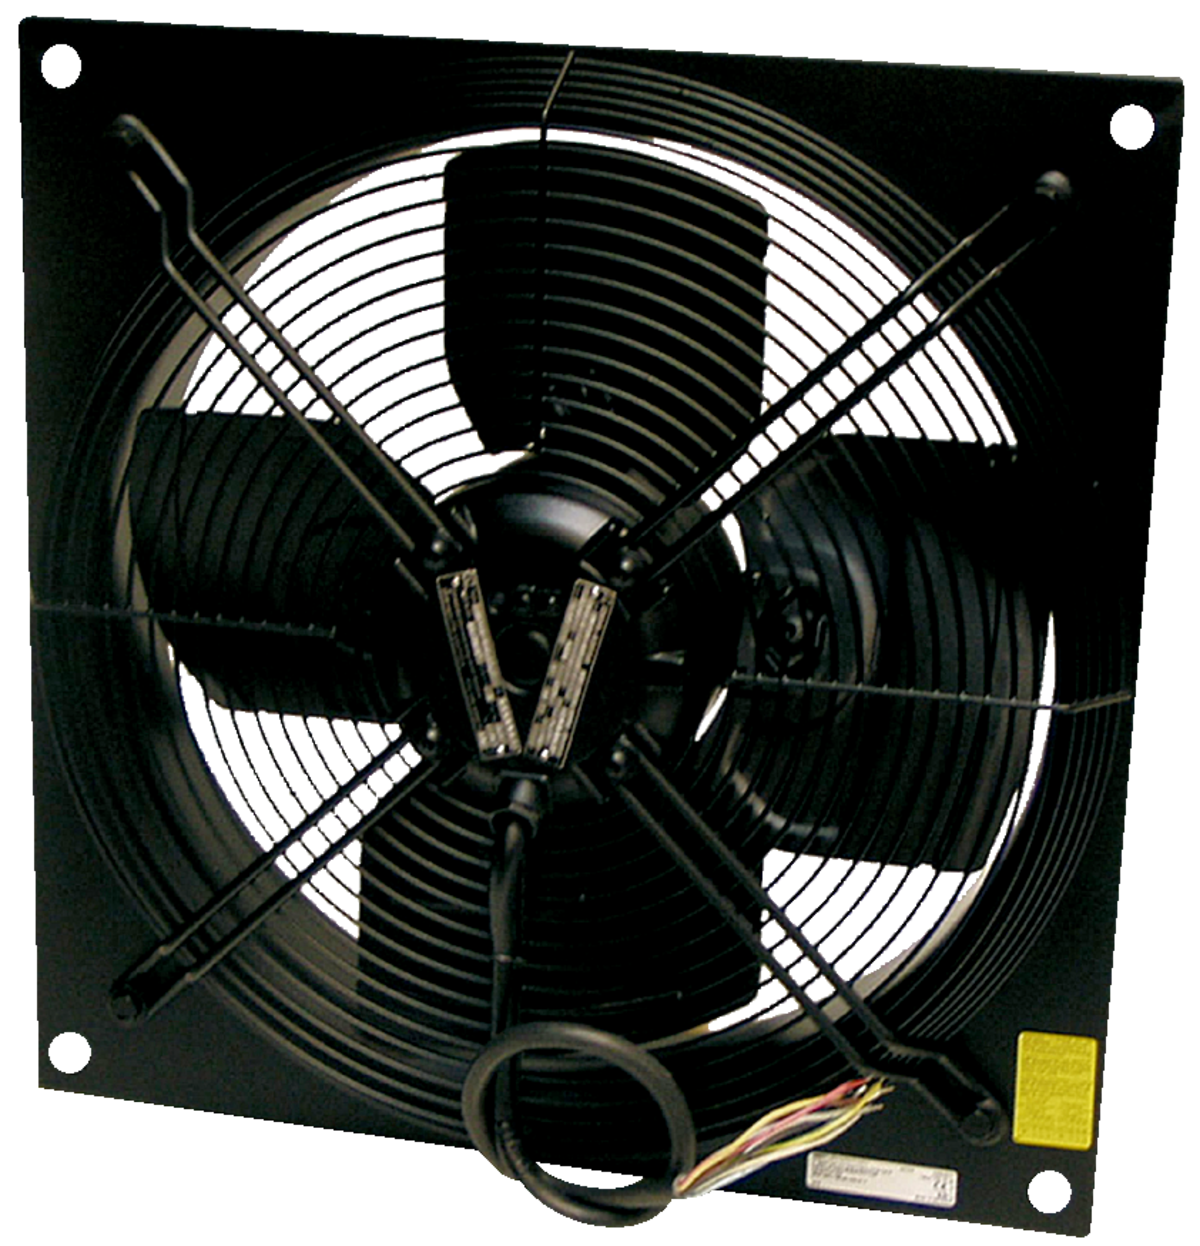 AW-EX - Ventilateurs axiaux - Ventilateurs (Ventilation et Traitement d’air) - Produits Ventilation & Traitement d’air - Systemair